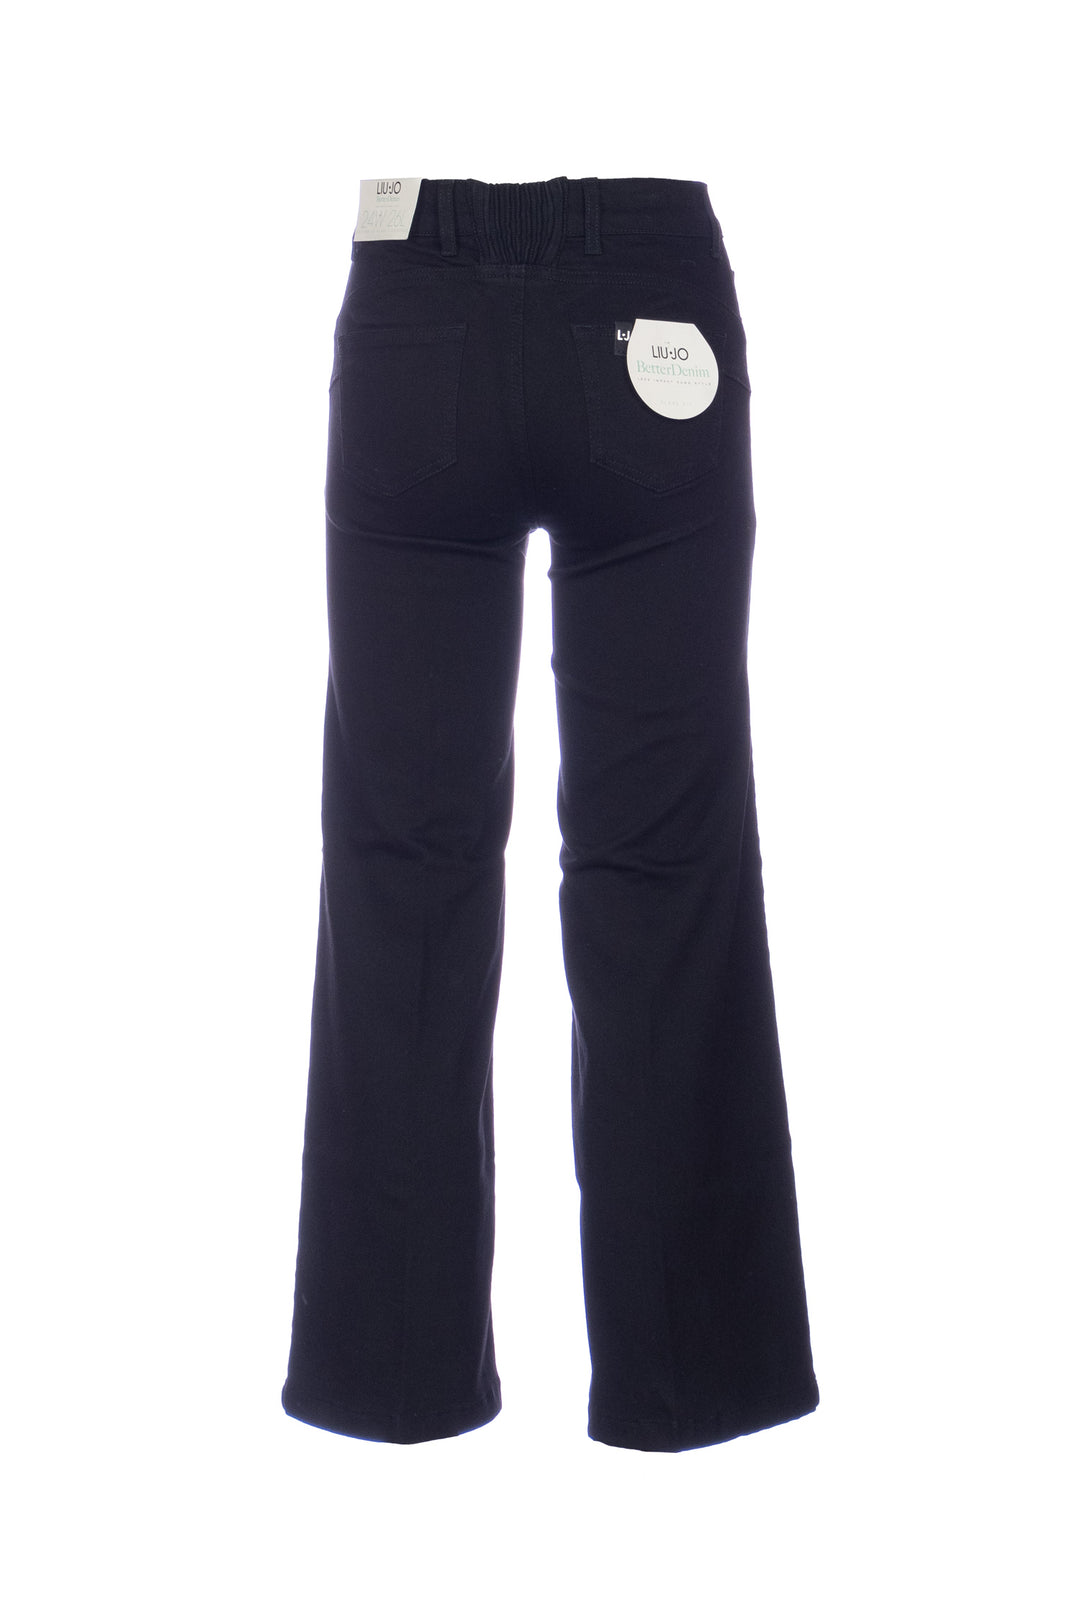 LIU JO Jeans cropped nero Liu Jo Better in denim di cotone stretch - Mancinelli 1954